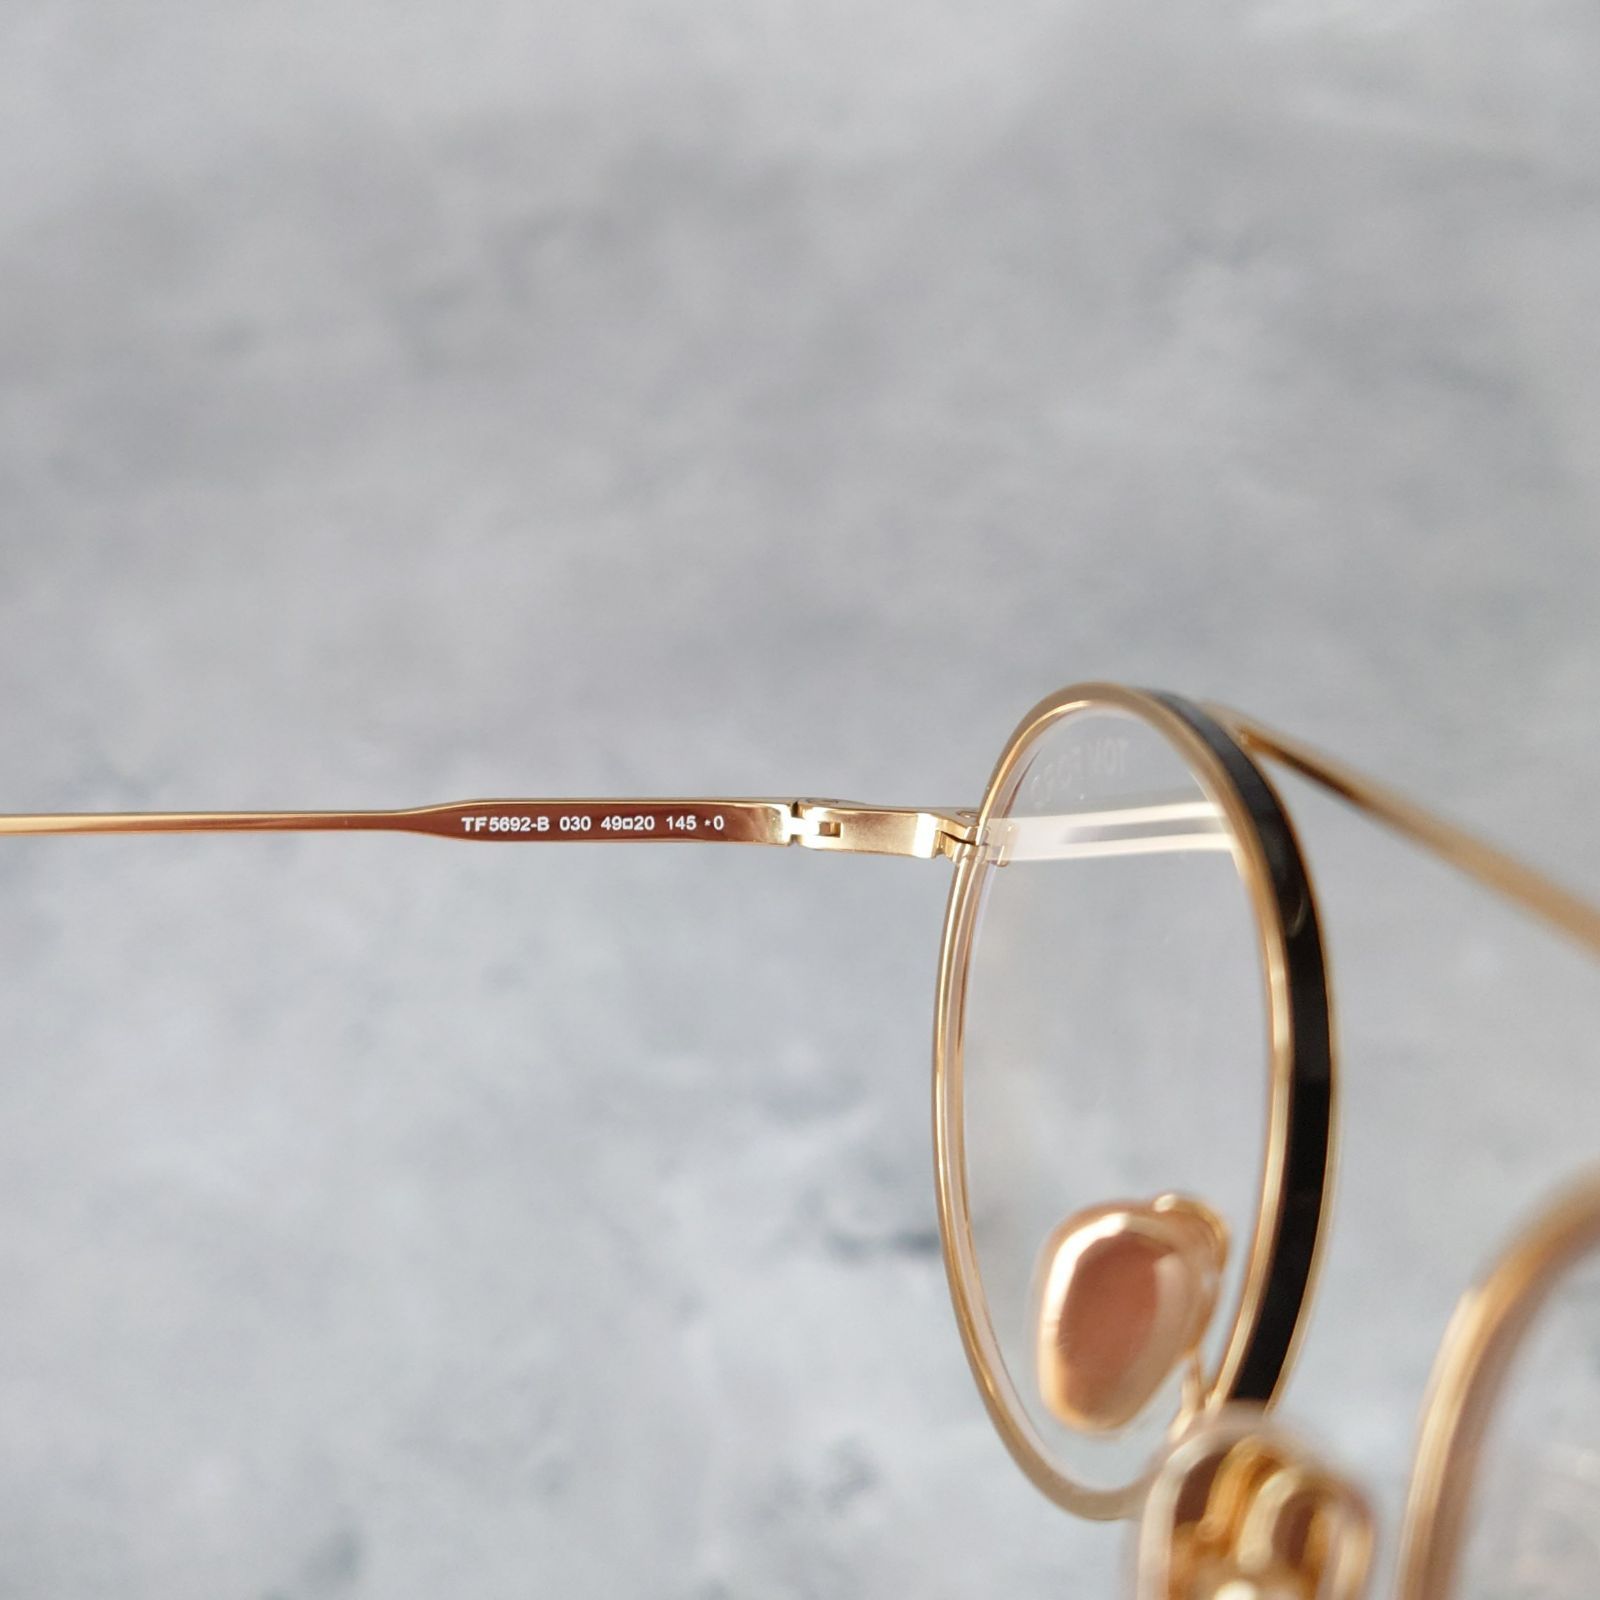 絶対一番安い メガネ トムフォード オーバル ゴールド メタル セル巻き